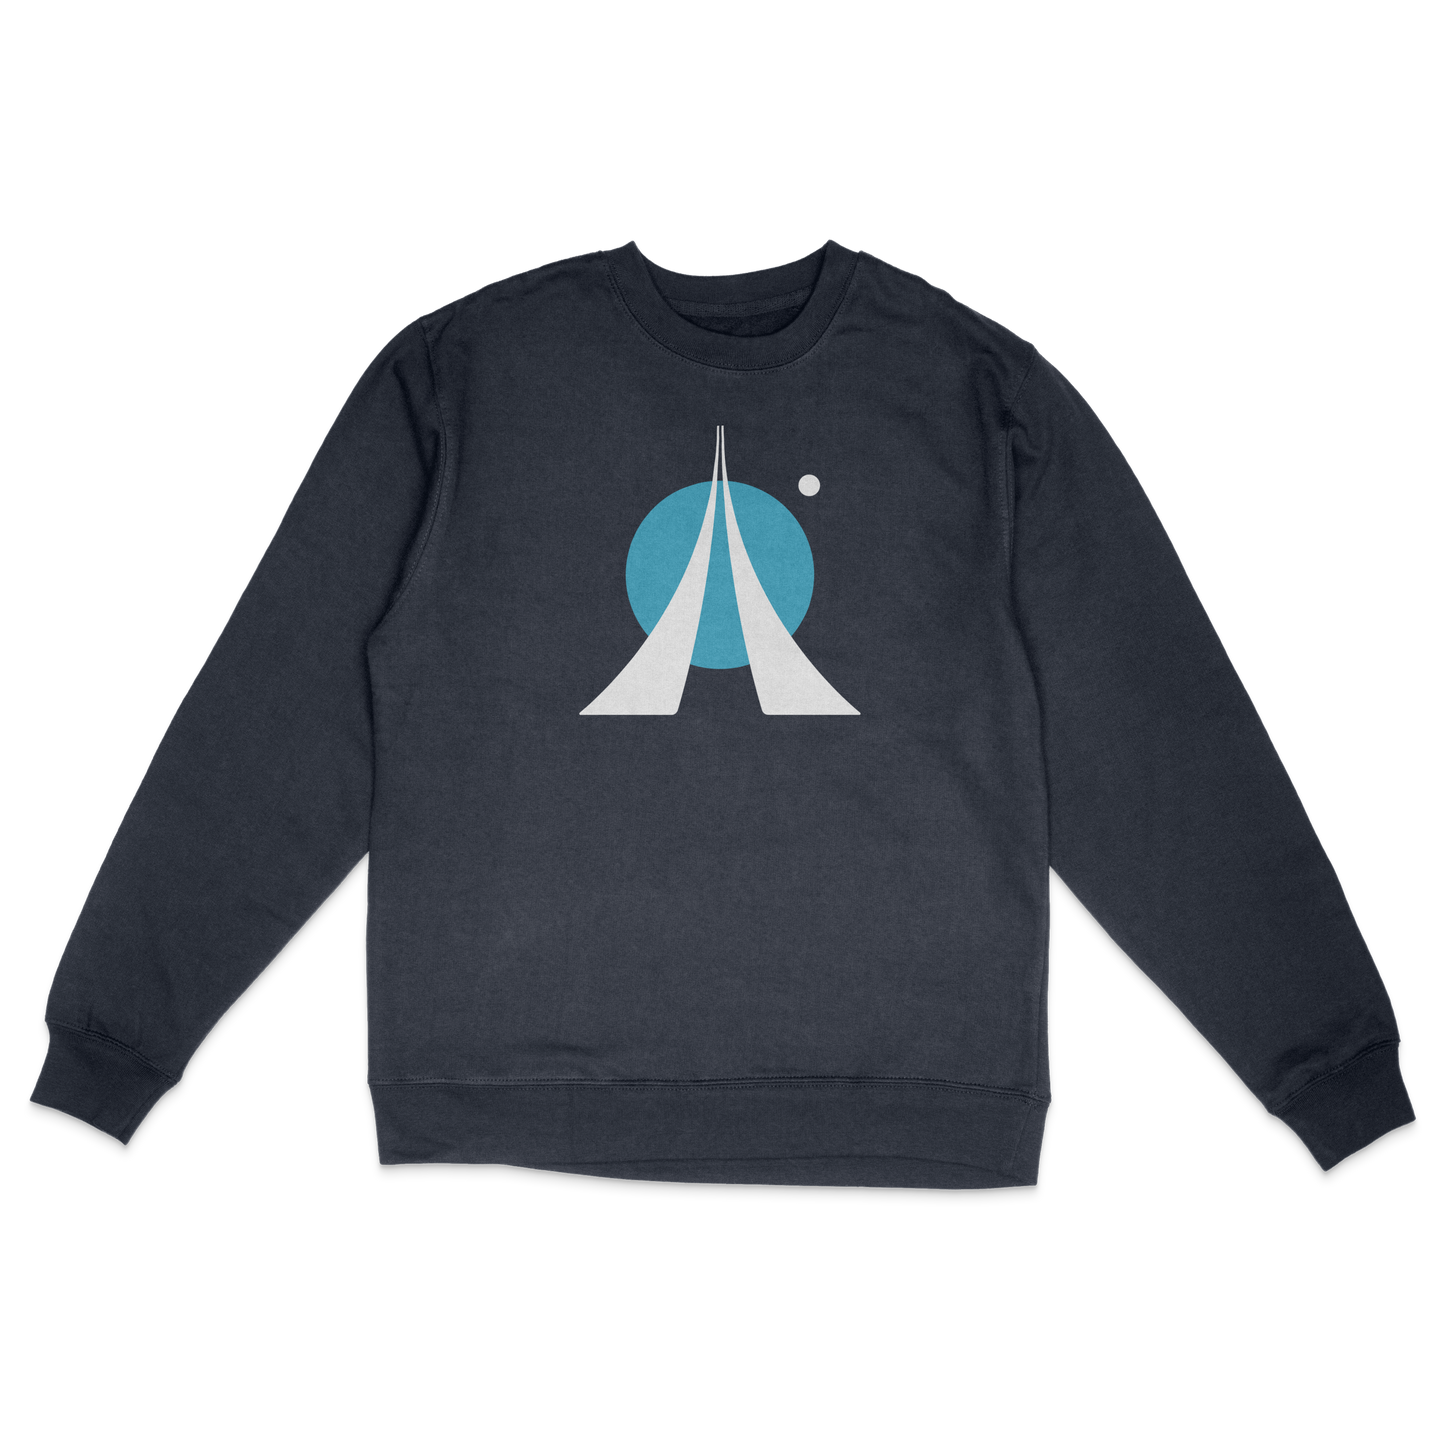 Apollo Program Sweatshirt